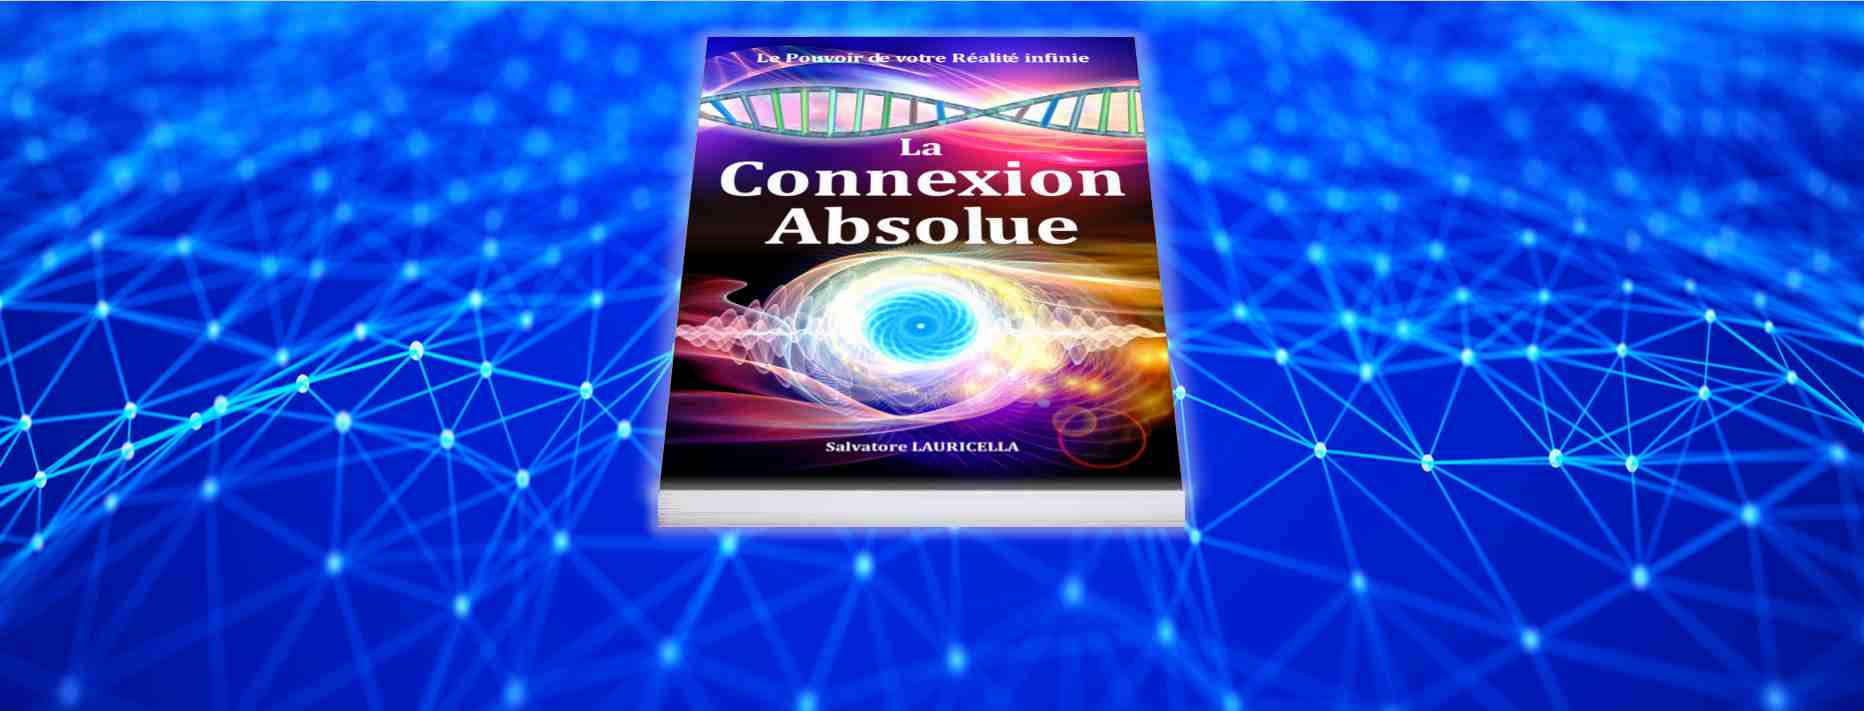 Le livre spirituel de Concience du Moi, La Connexion Absolue, présenté sur une grille de Connexion blanche sur fond azur.